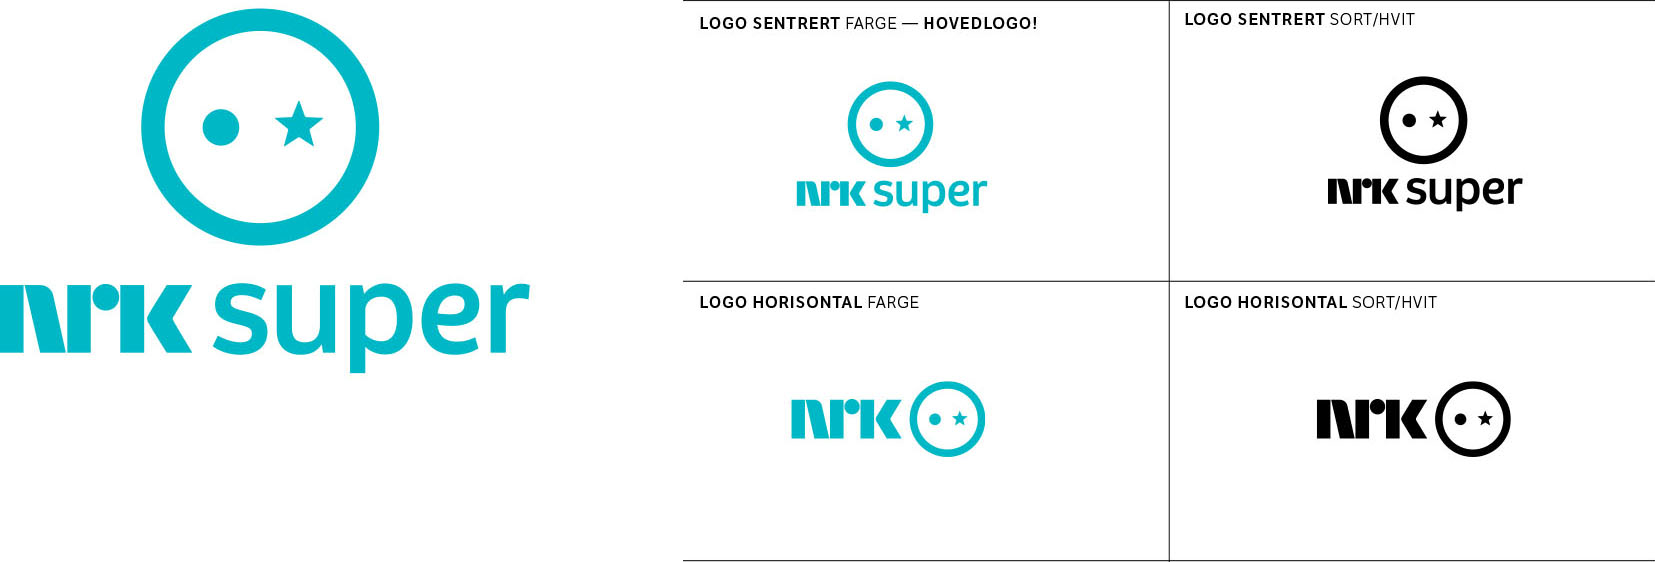 Bilde av NRK Super logoen. Sentrert og horisontal versjon.